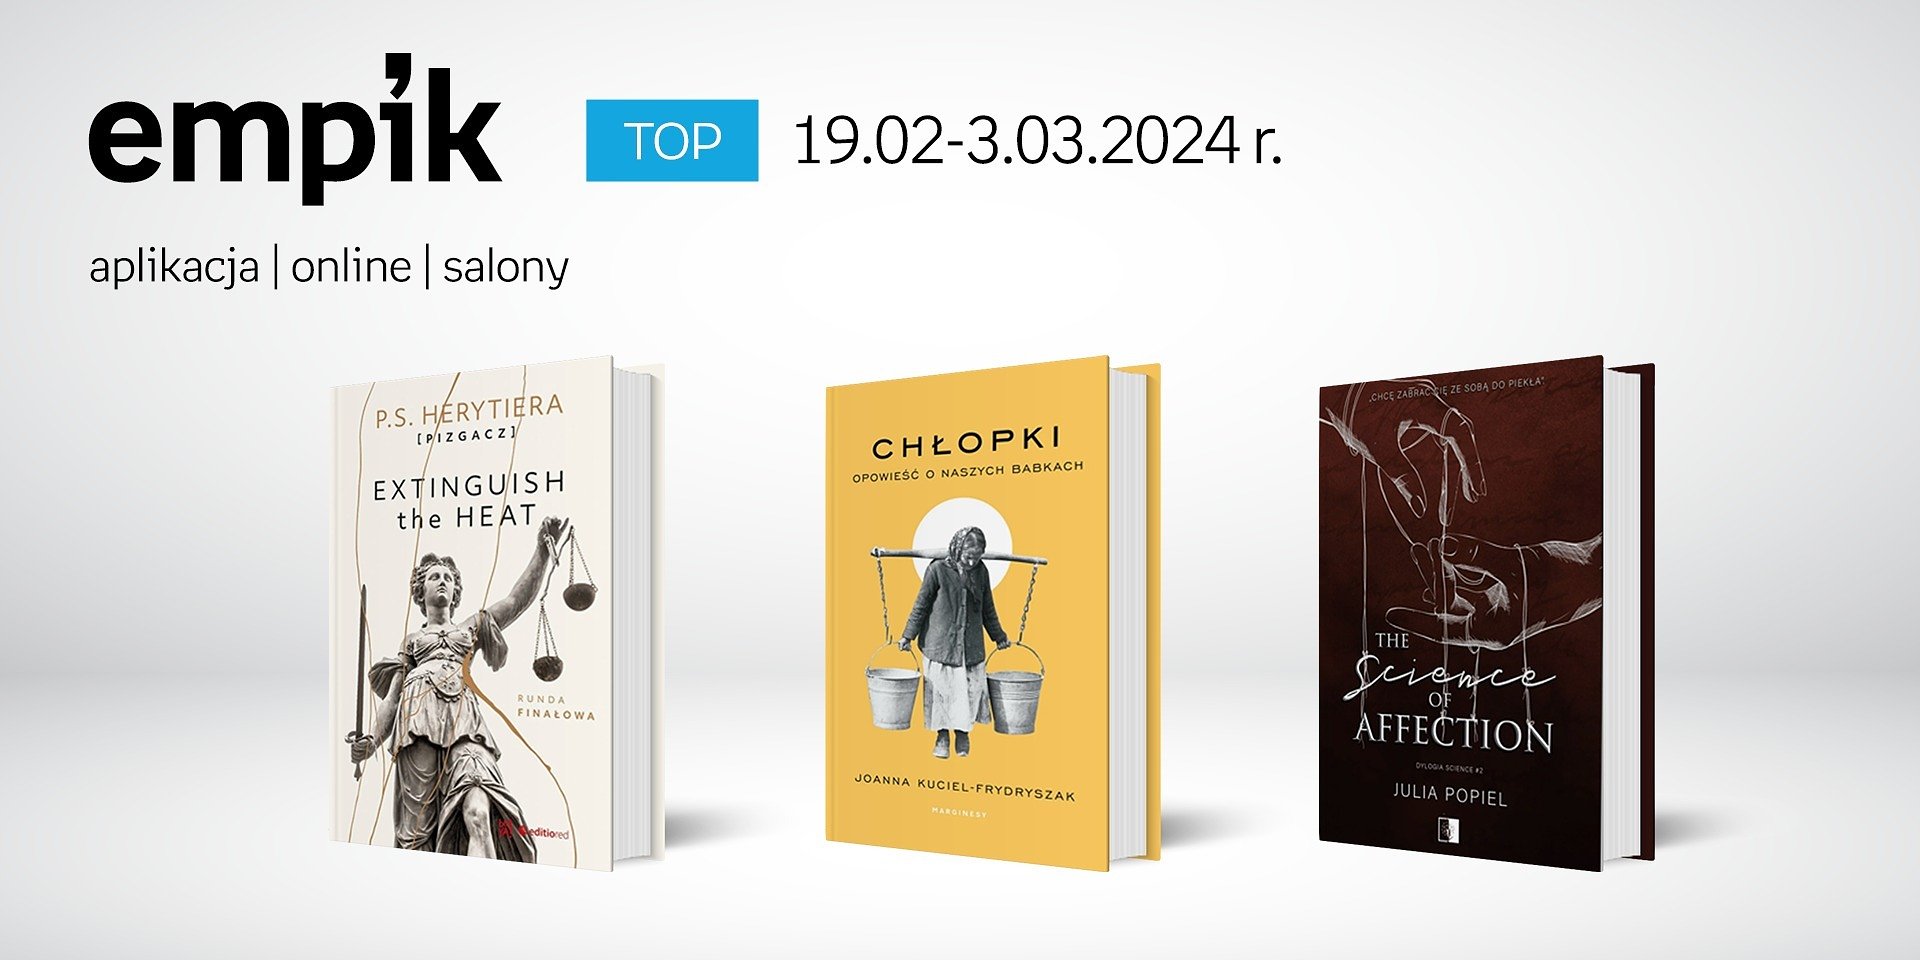 Książkowe listy bestsellerów w Empiku za okres 19.02-03.03.2024 r.